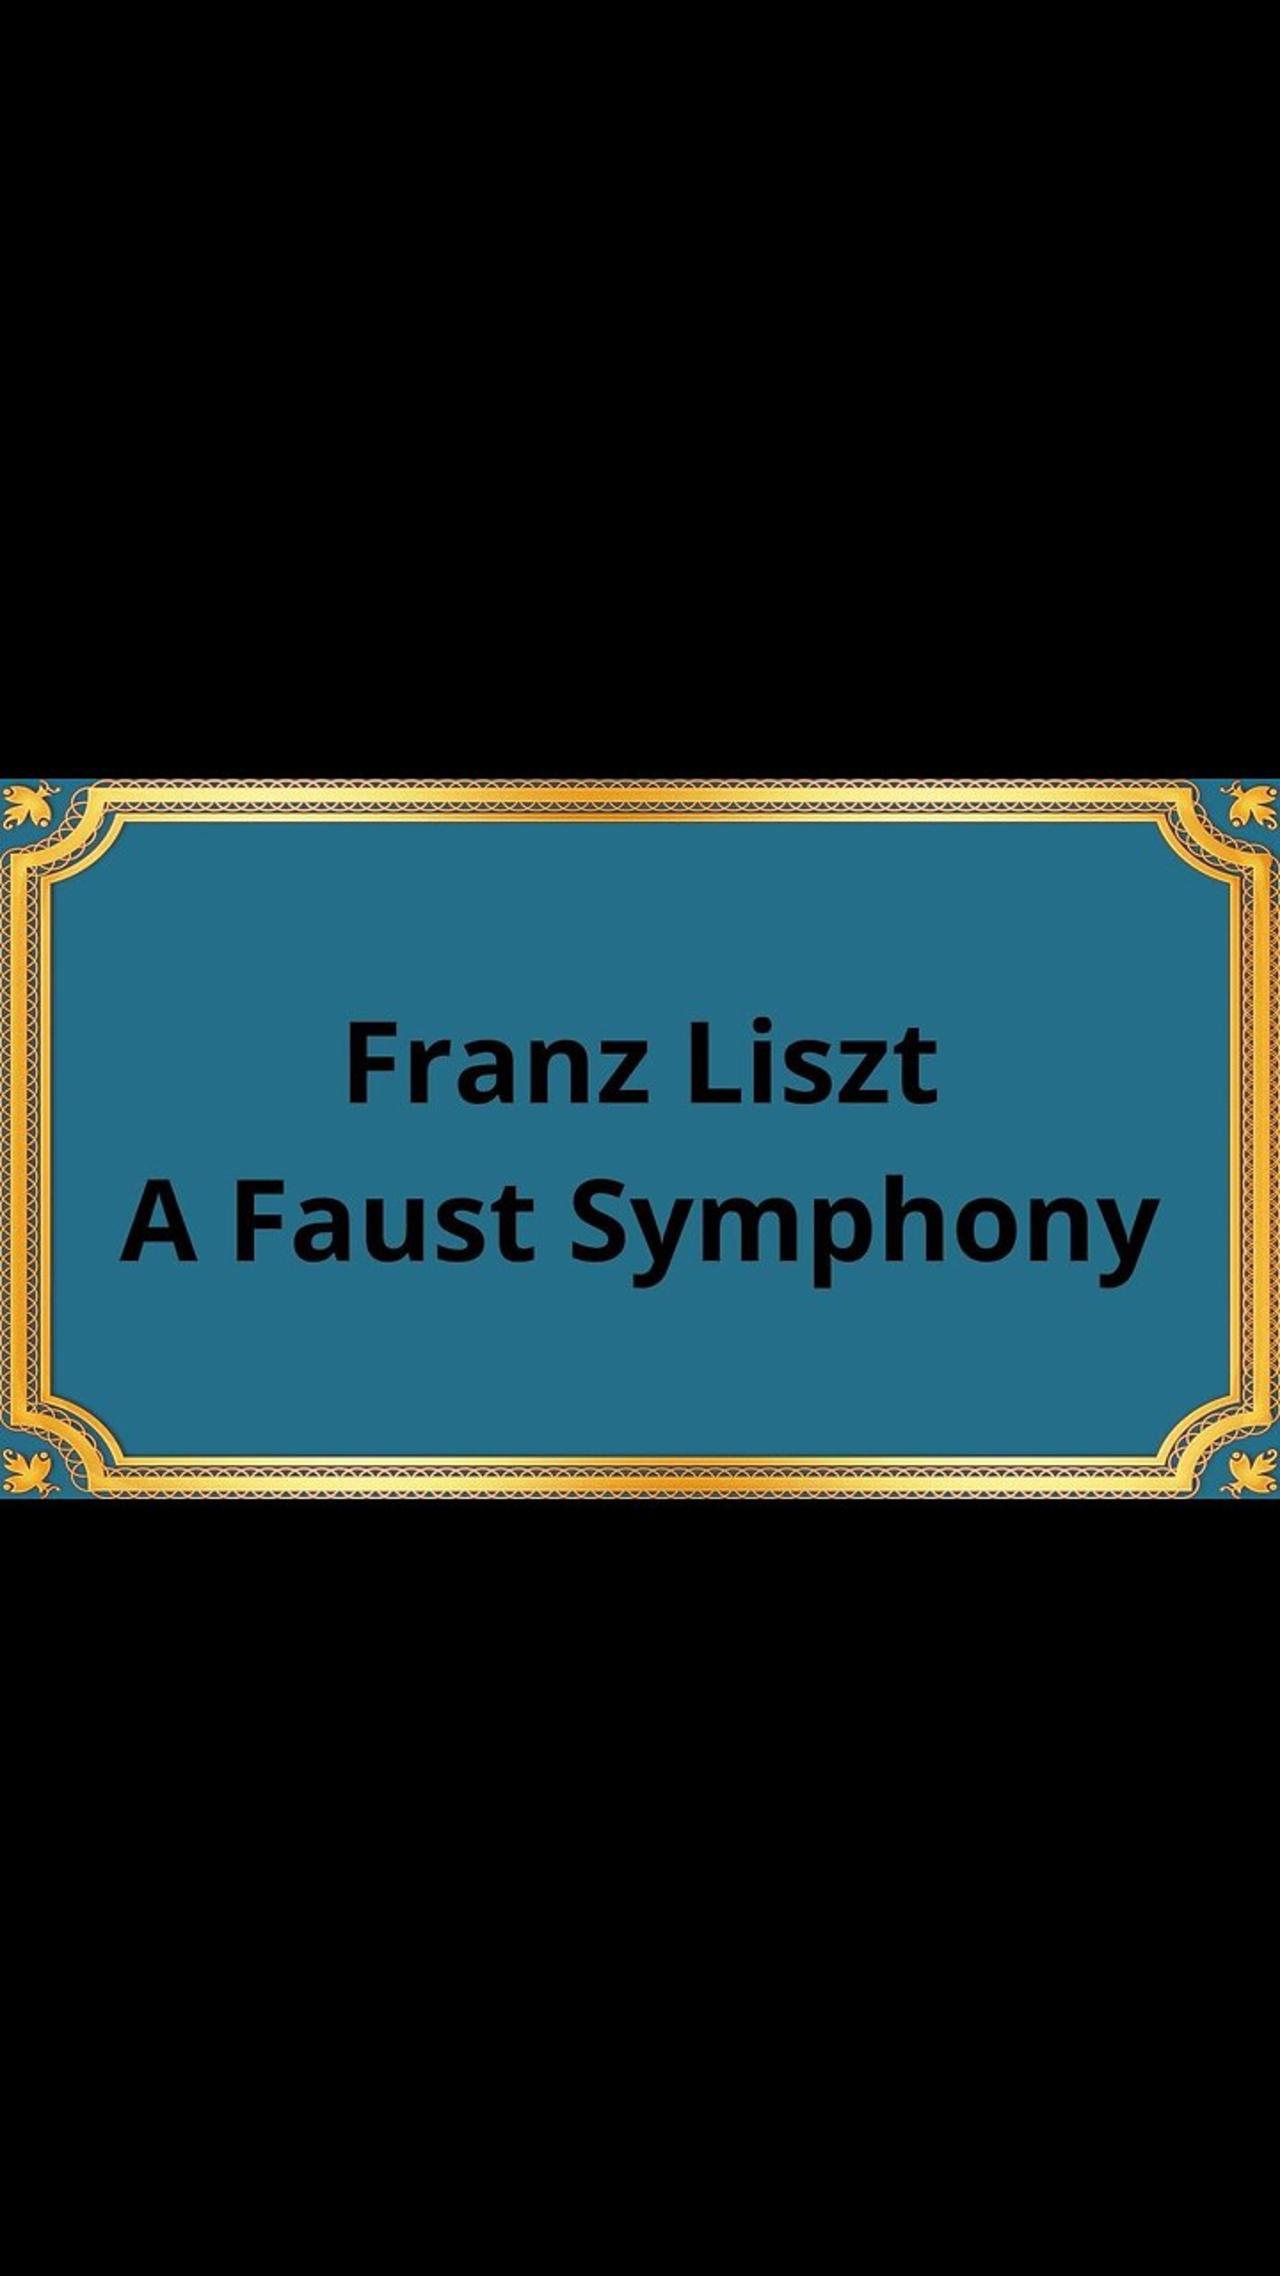 Franz Liszt A Faust Symphony